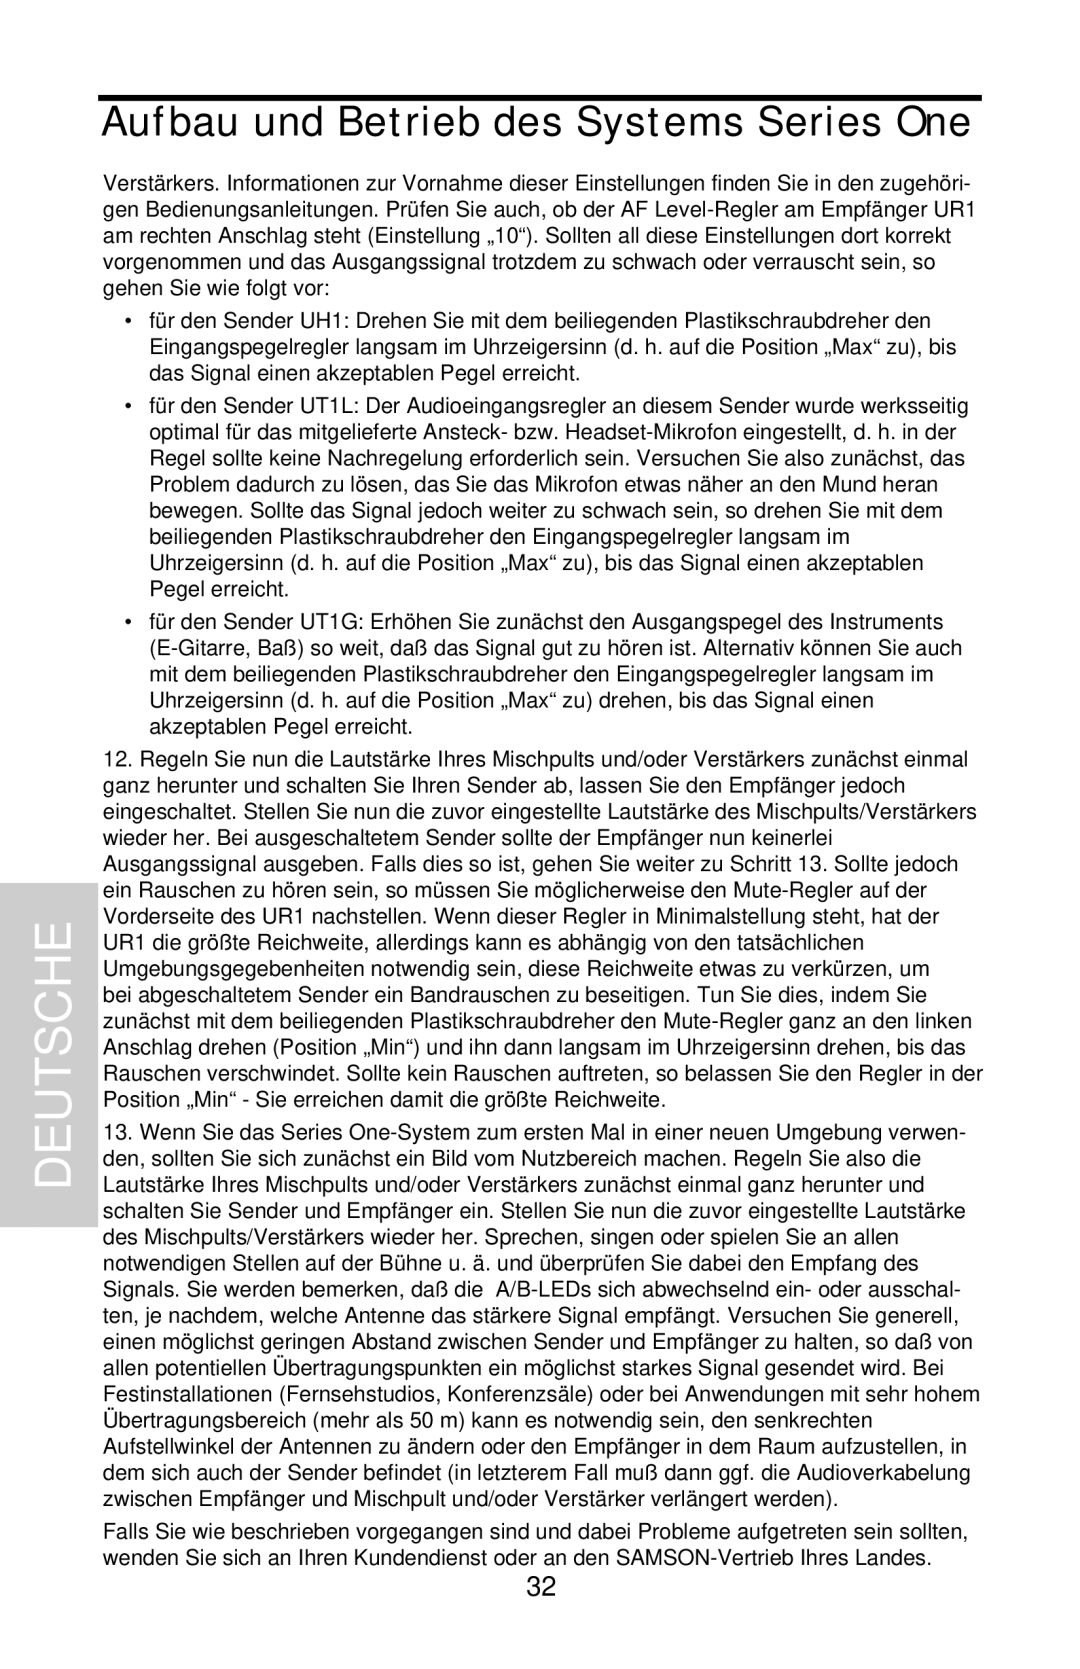 Samson UHF 801 owner manual Deutsche, Aufbau und Betrieb des Systems Series One 